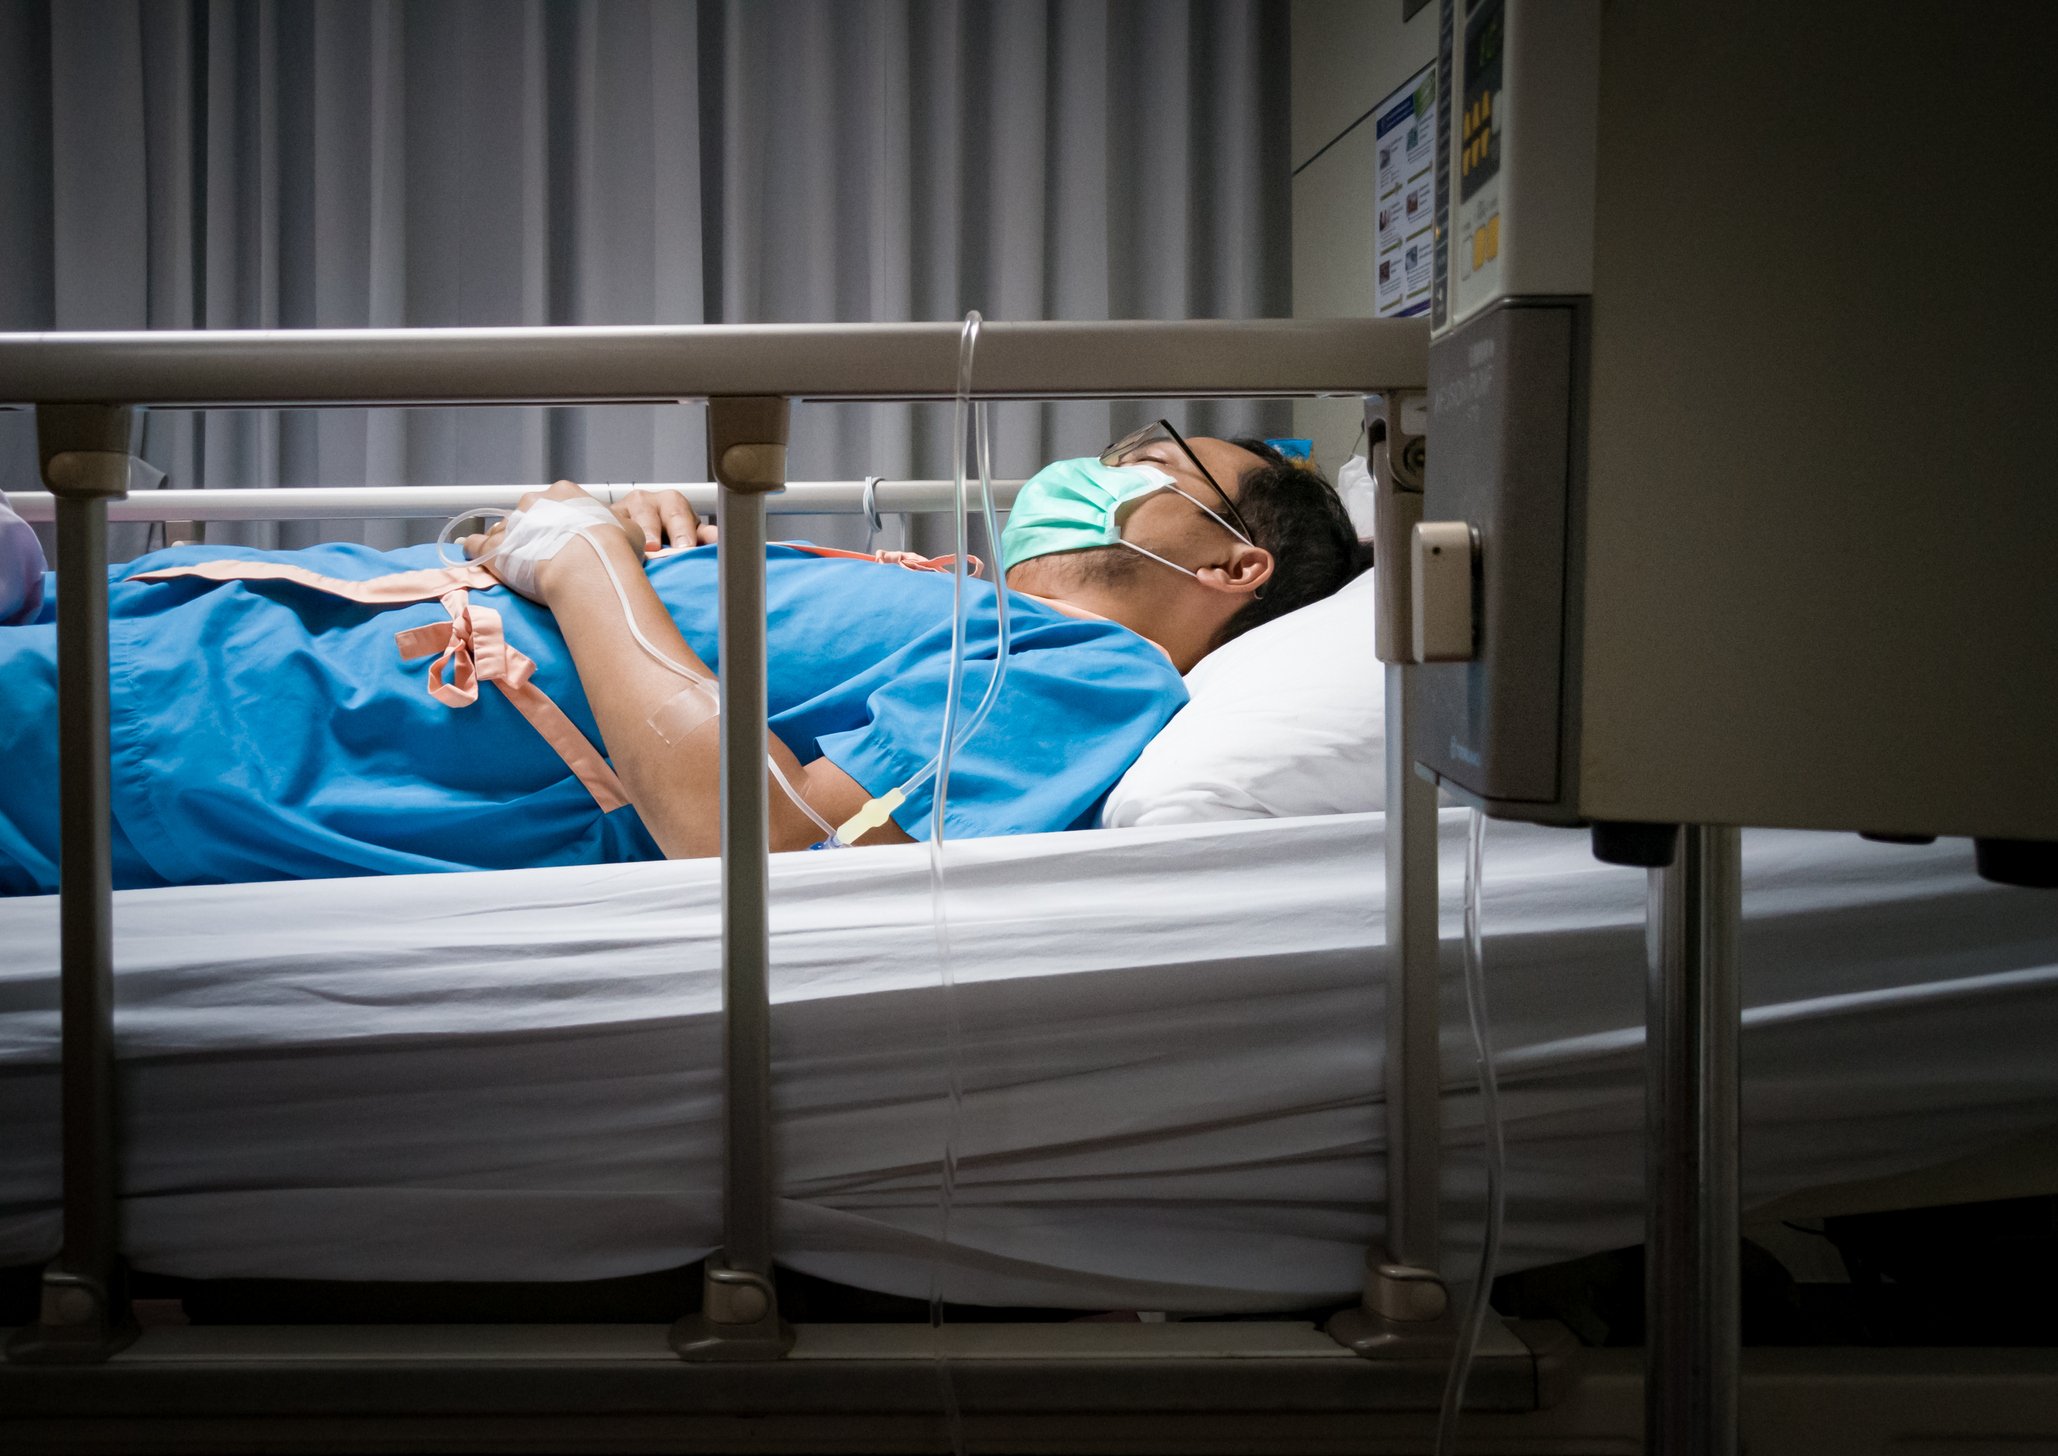 Dan war wieder verletzt worden und lag wieder im Krankenhausbett. | Quelle: Getty Images